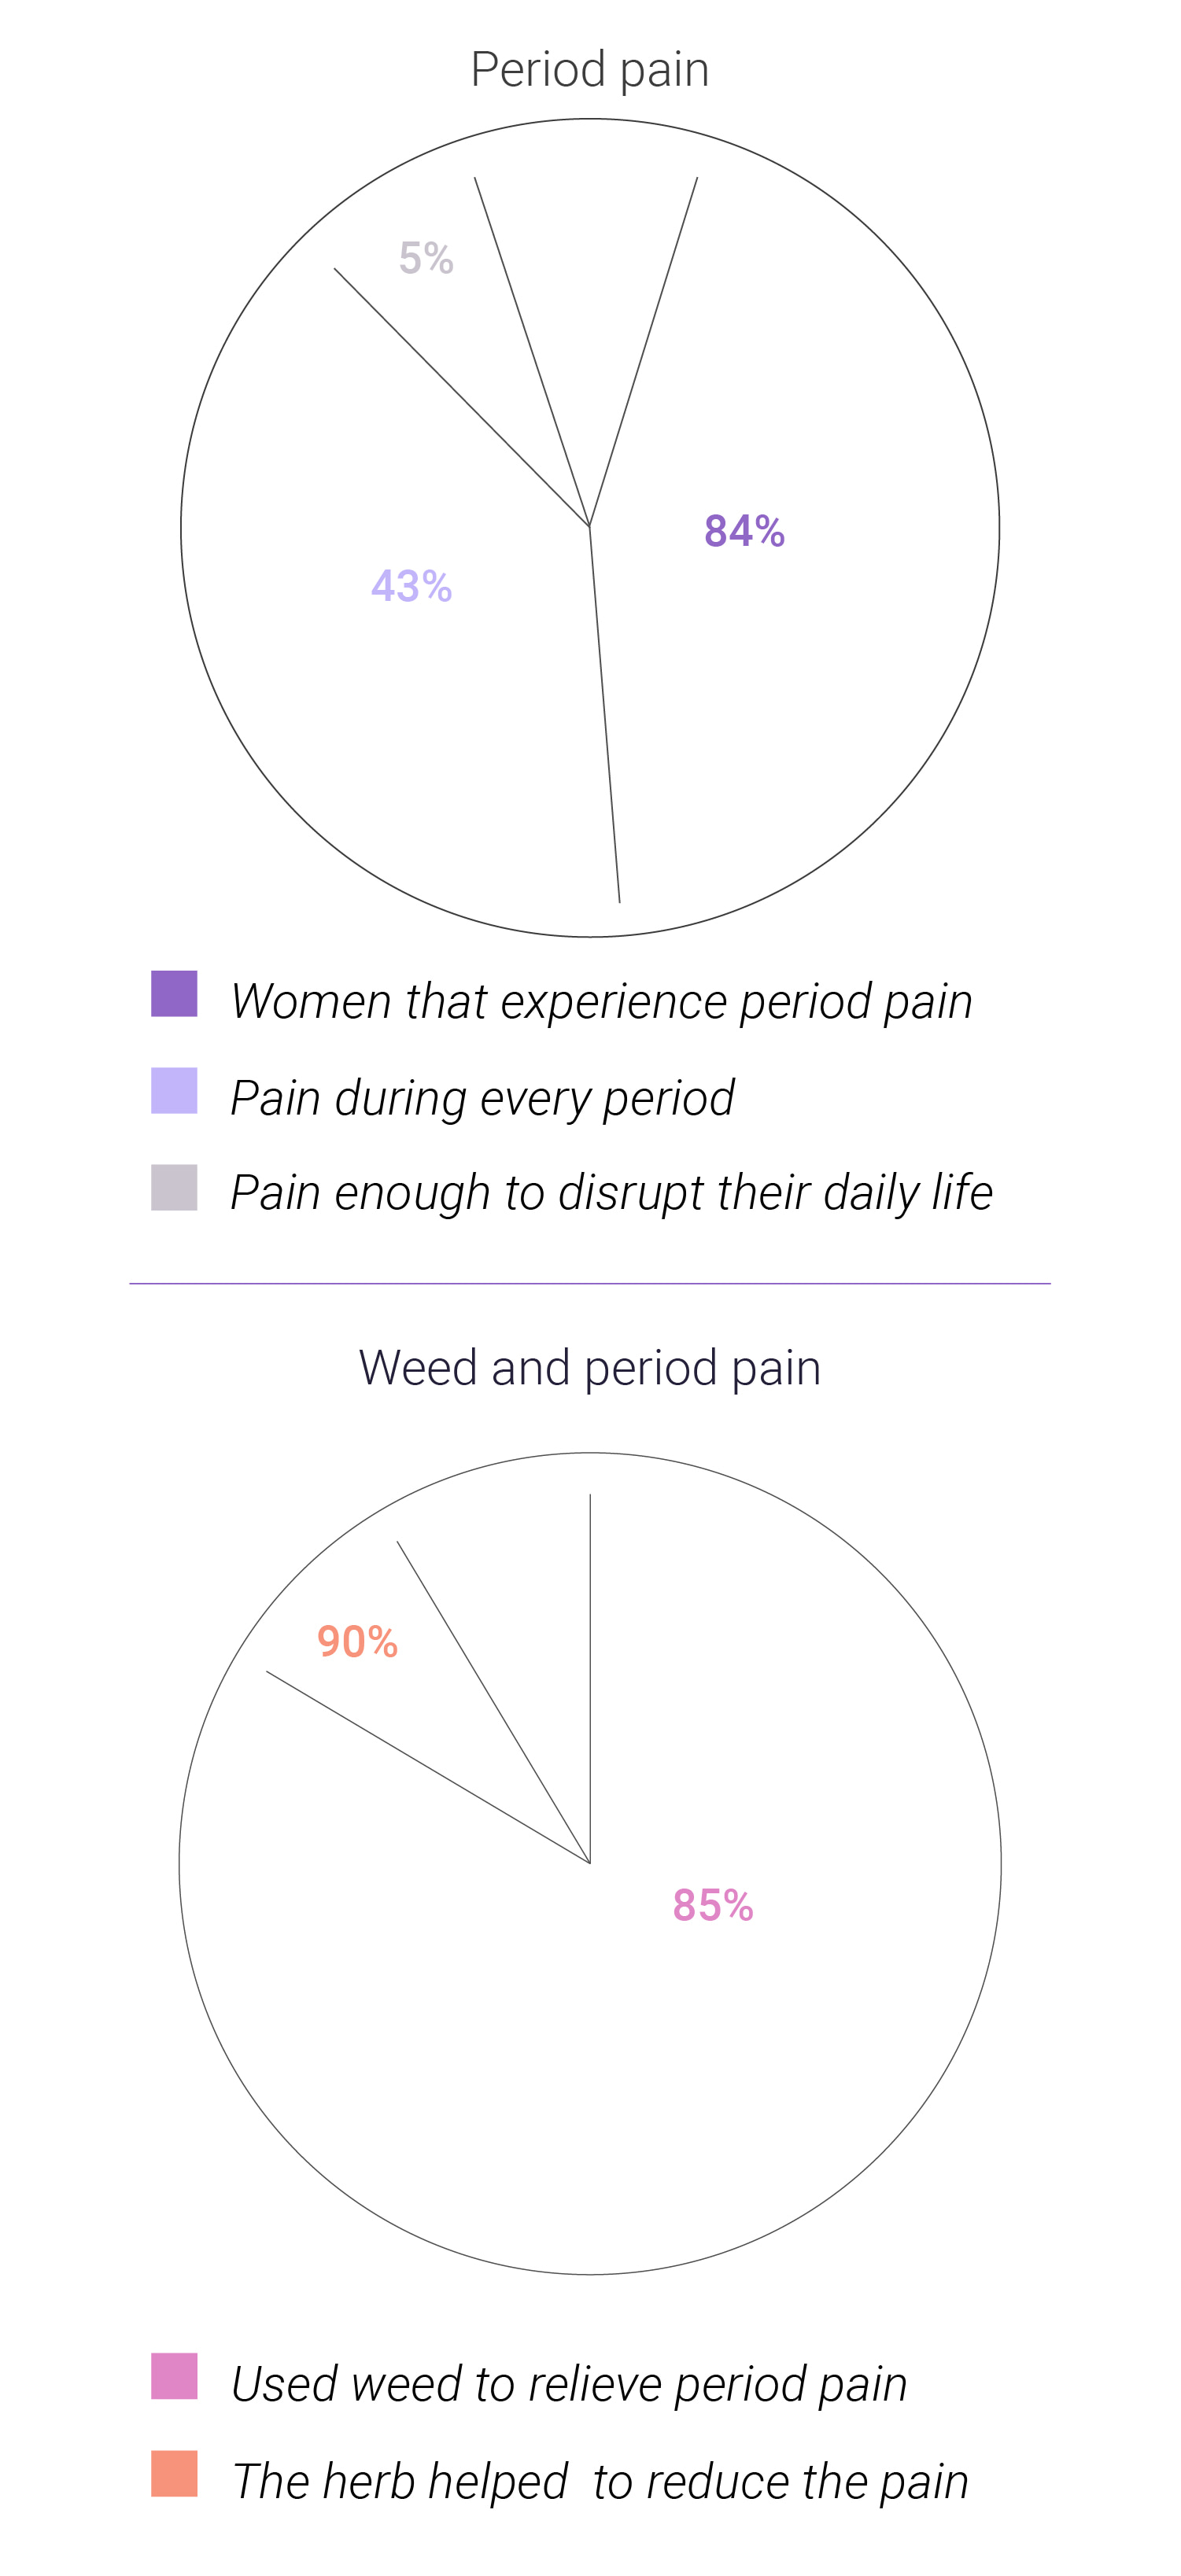 Kan wiet bijdragen aan de gezondheid van vrouwen?